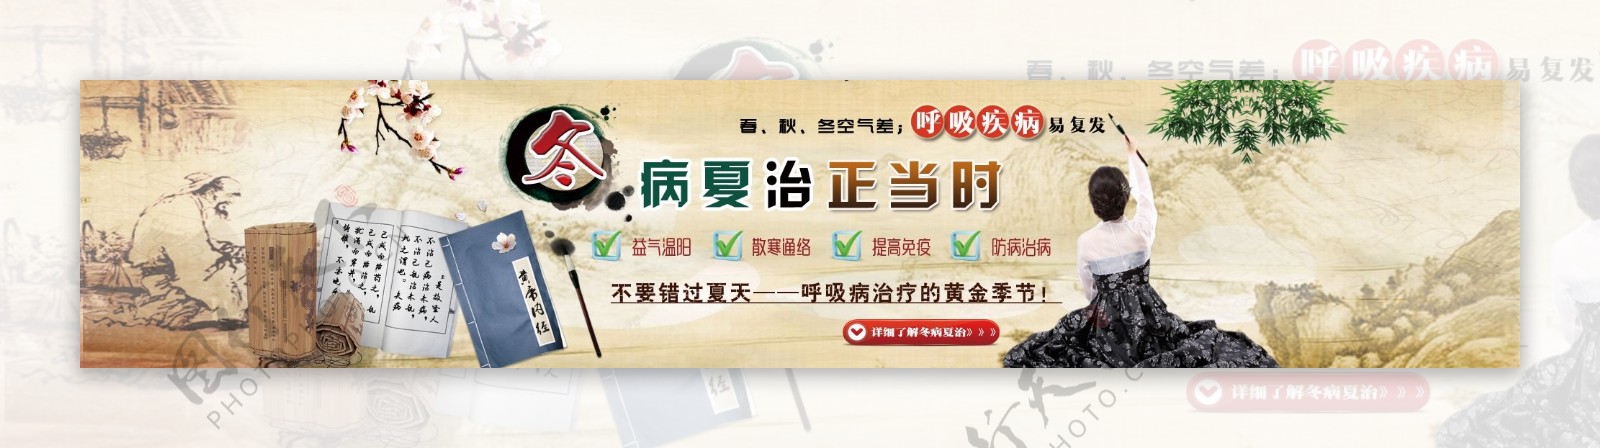 冬病夏治宣传网页banner